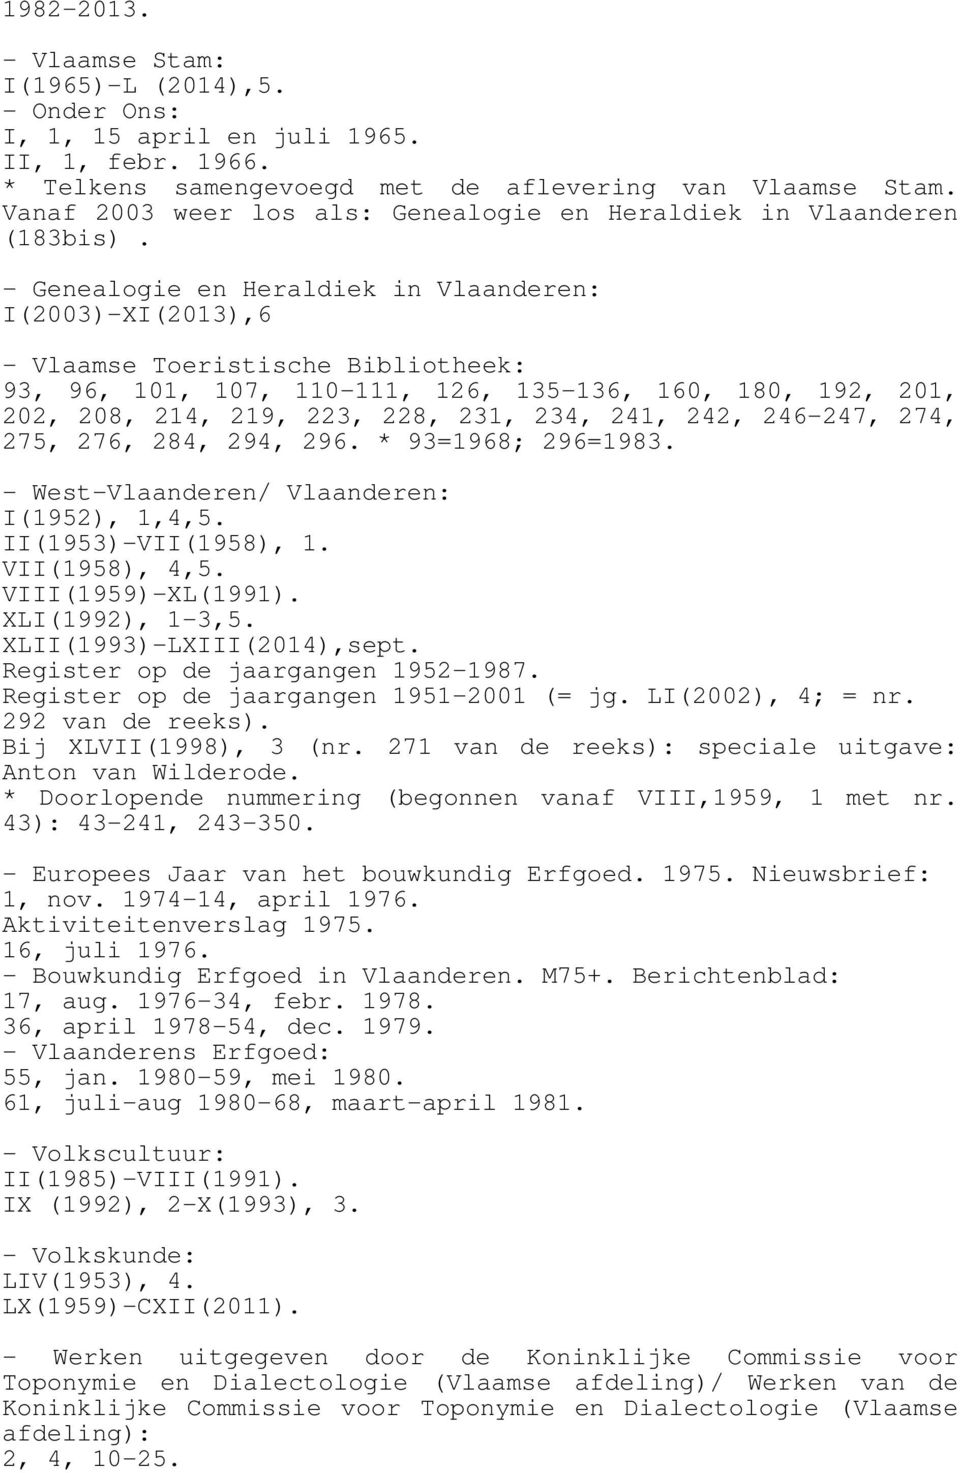 - Genealogie en Heraldiek in Vlaanderen: I(2003)-XI(2013),6 - Vlaamse Toeristische Bibliotheek: 93, 96, 101, 107, 110-111, 126, 135-136, 160, 180, 192, 201, 202, 208, 214, 219, 223, 228, 231, 234,